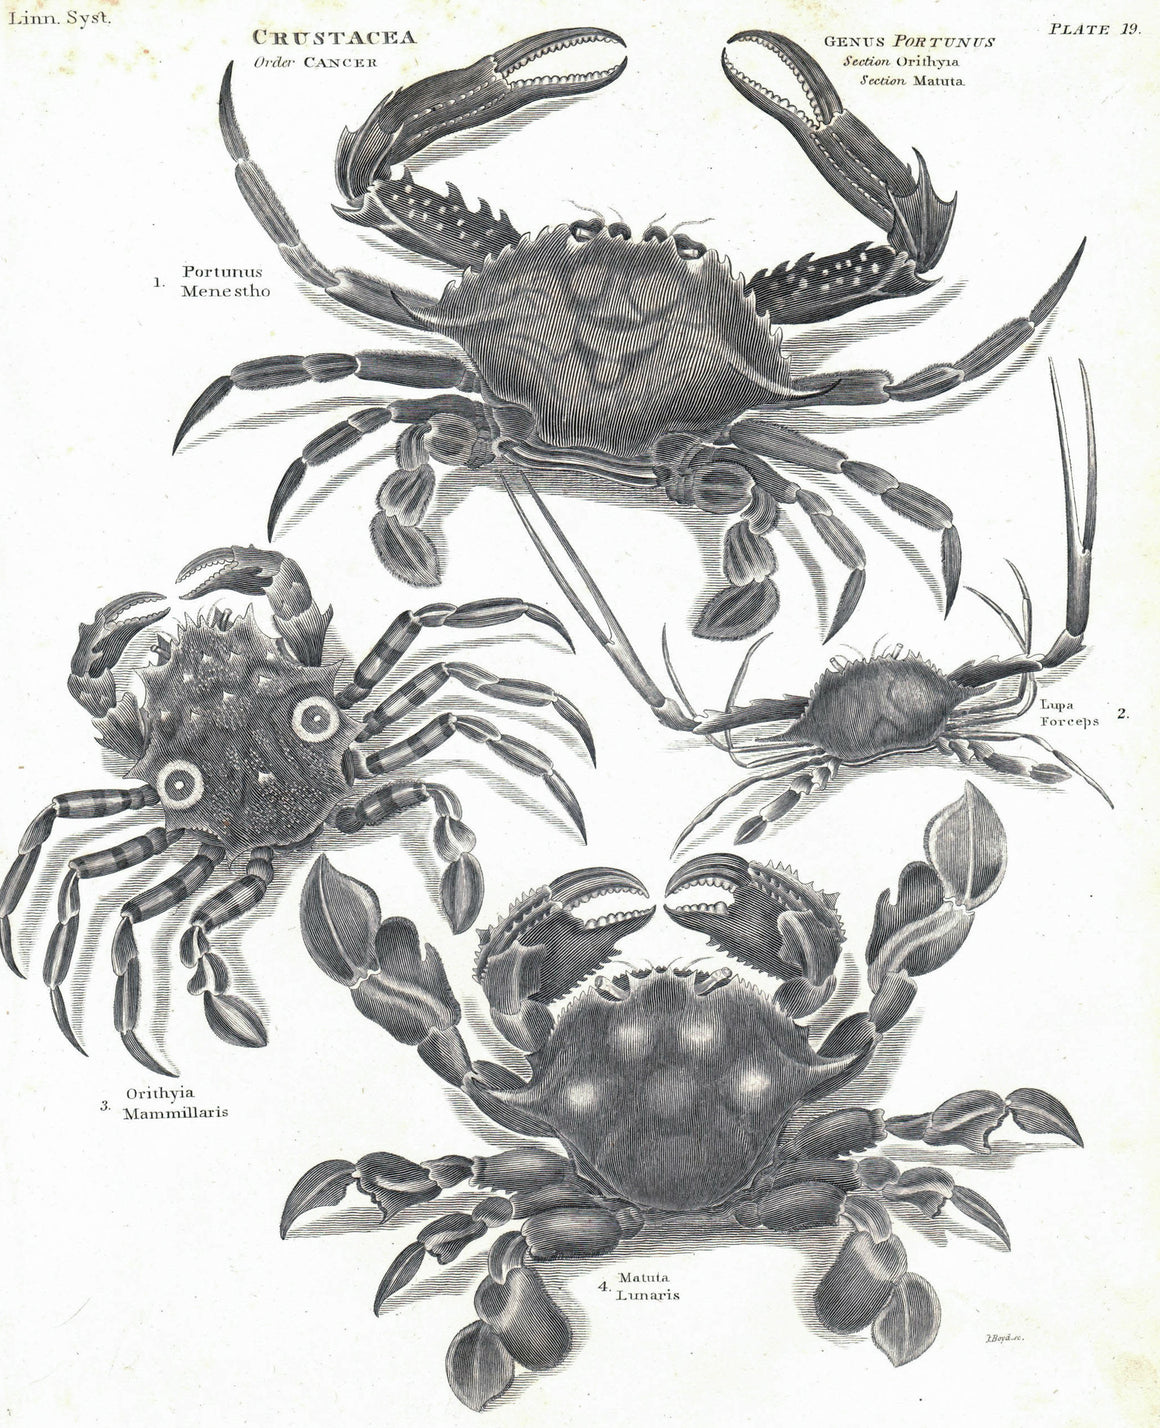 1834 Crustacea Plate 19